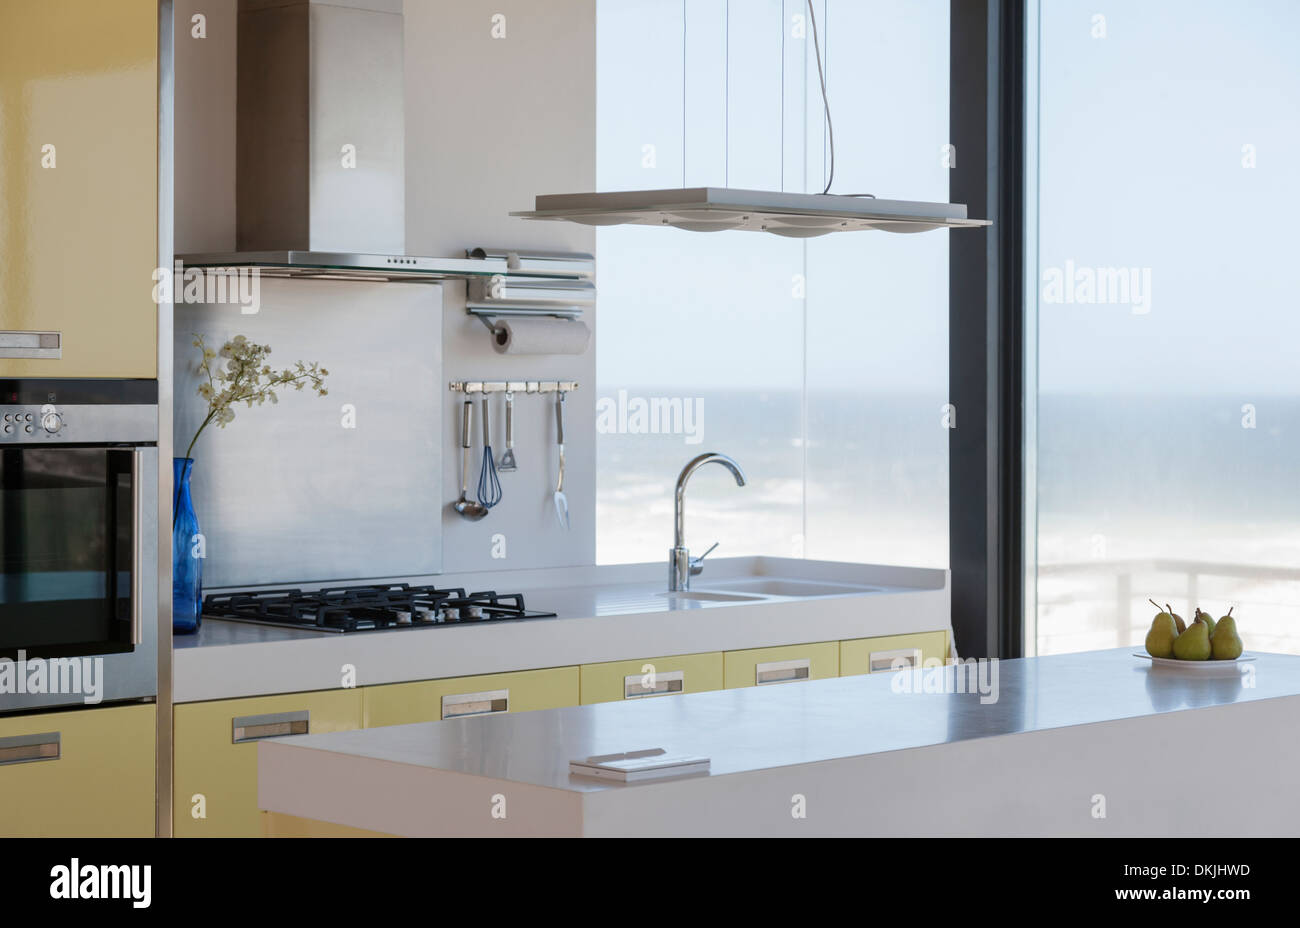 Moderne Küche mit Blick auf Meer Stockfoto